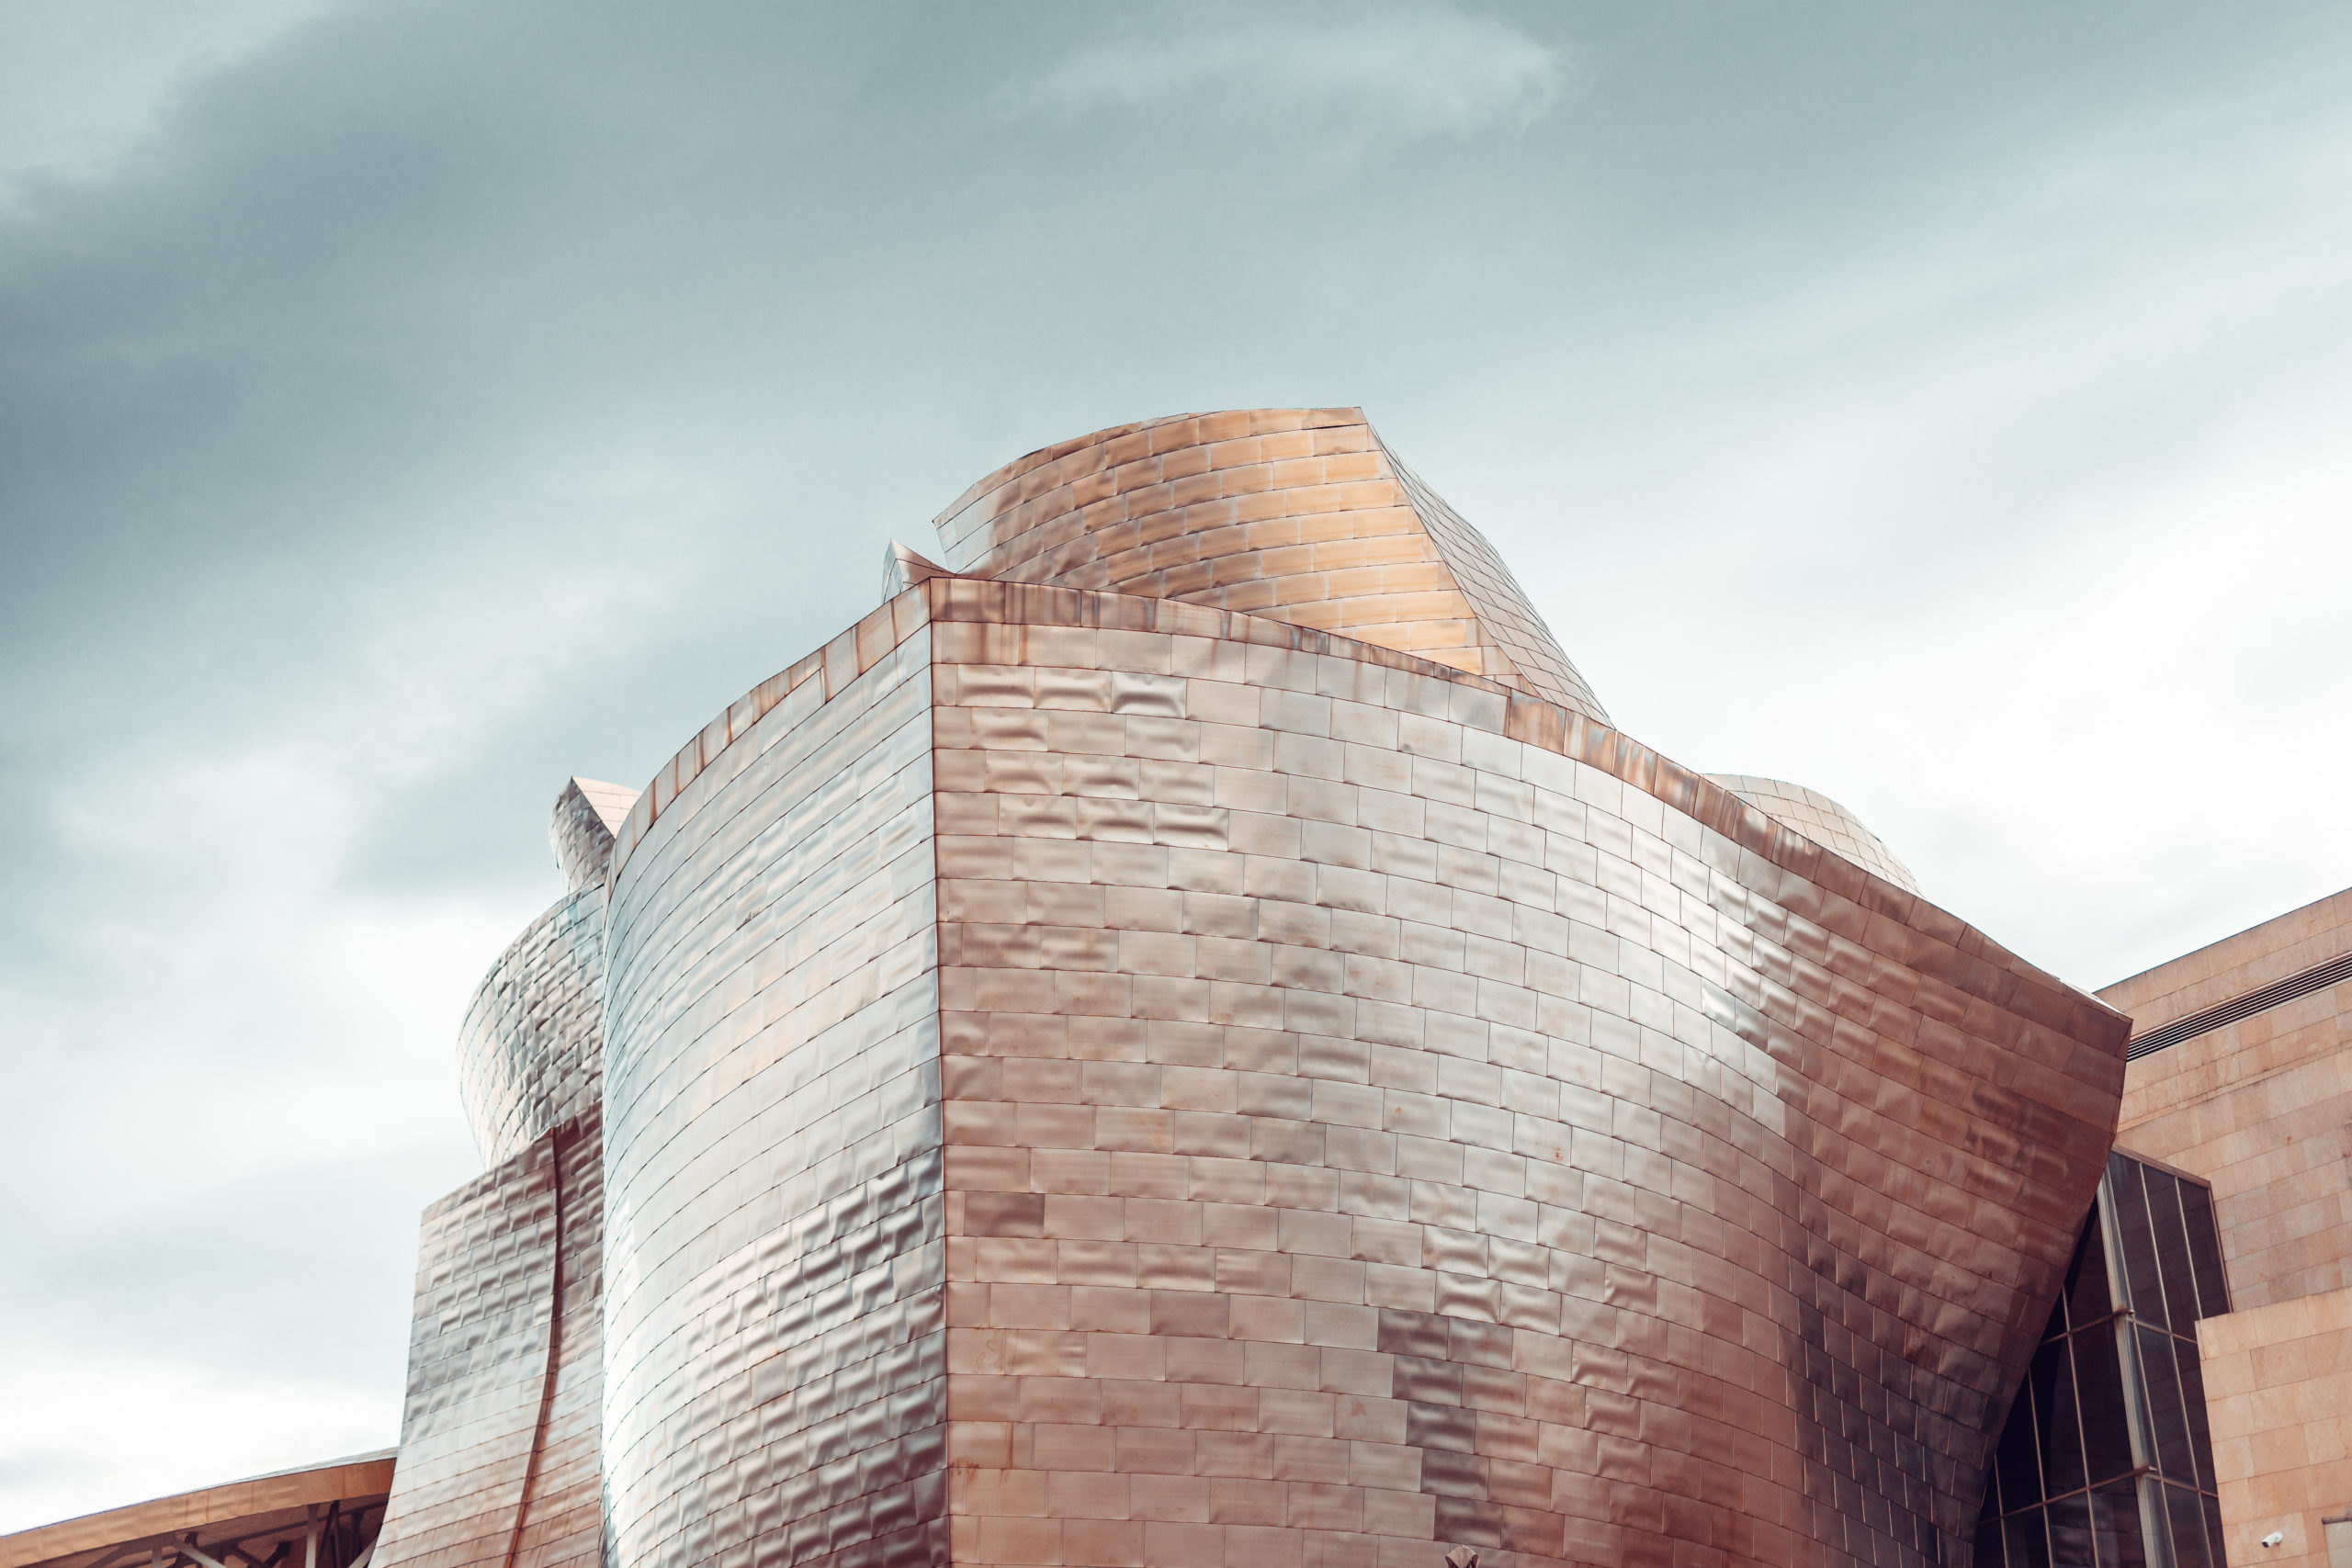 Das Guggenheim Museum im Bilbao gehört zu den architektonisch schönsten Museen der Welt. Foto rubenchase via Envato